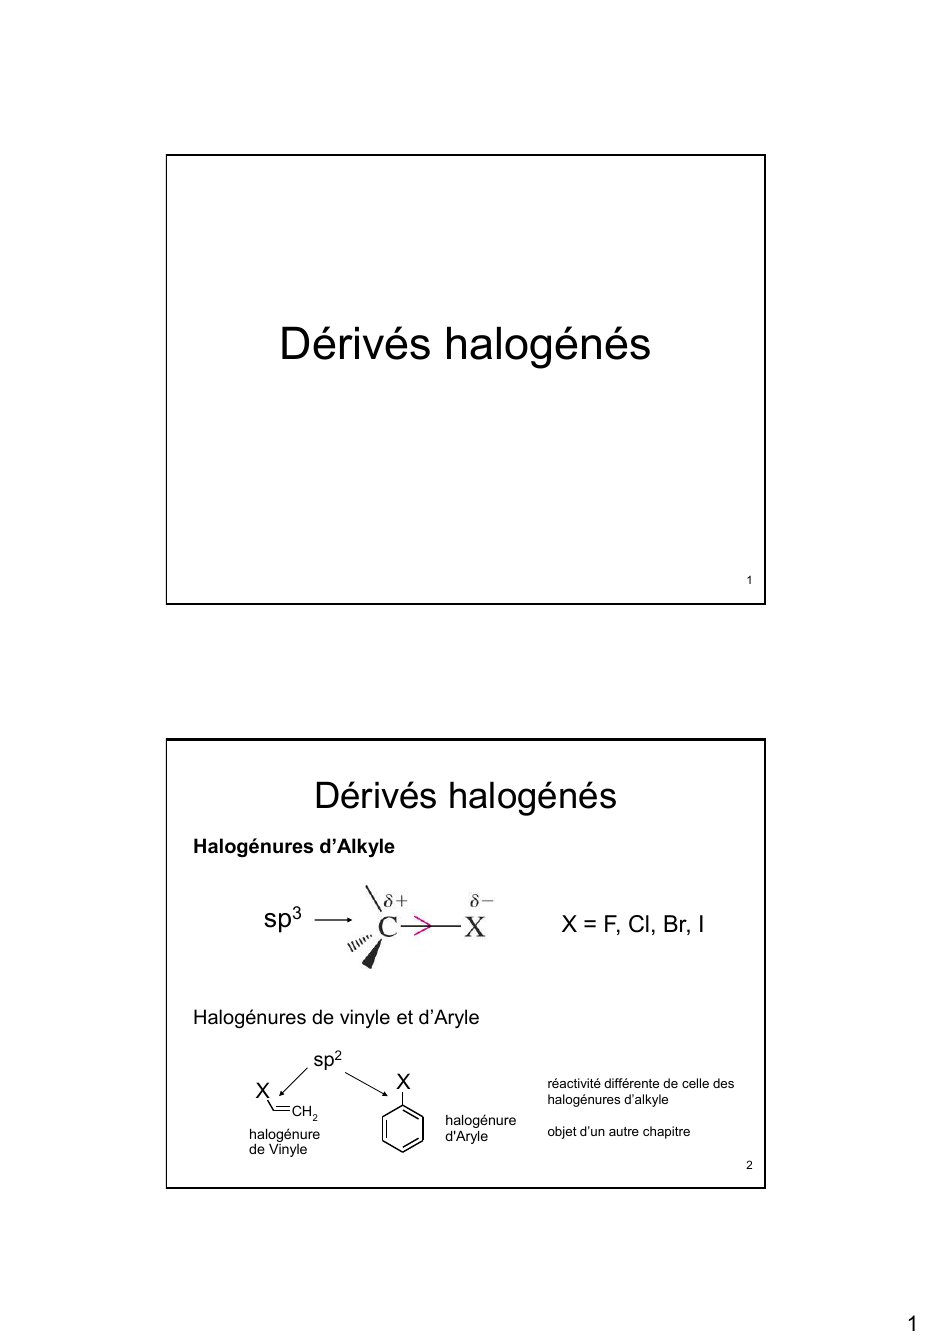 Prévisualisation du document Dérivés halogénés

1

Dérivés halogénés
Halogénures d’Alkyle

sp3

X = F, Cl, Br, I

Halogénures de vinyle et d’Aryle
sp2...